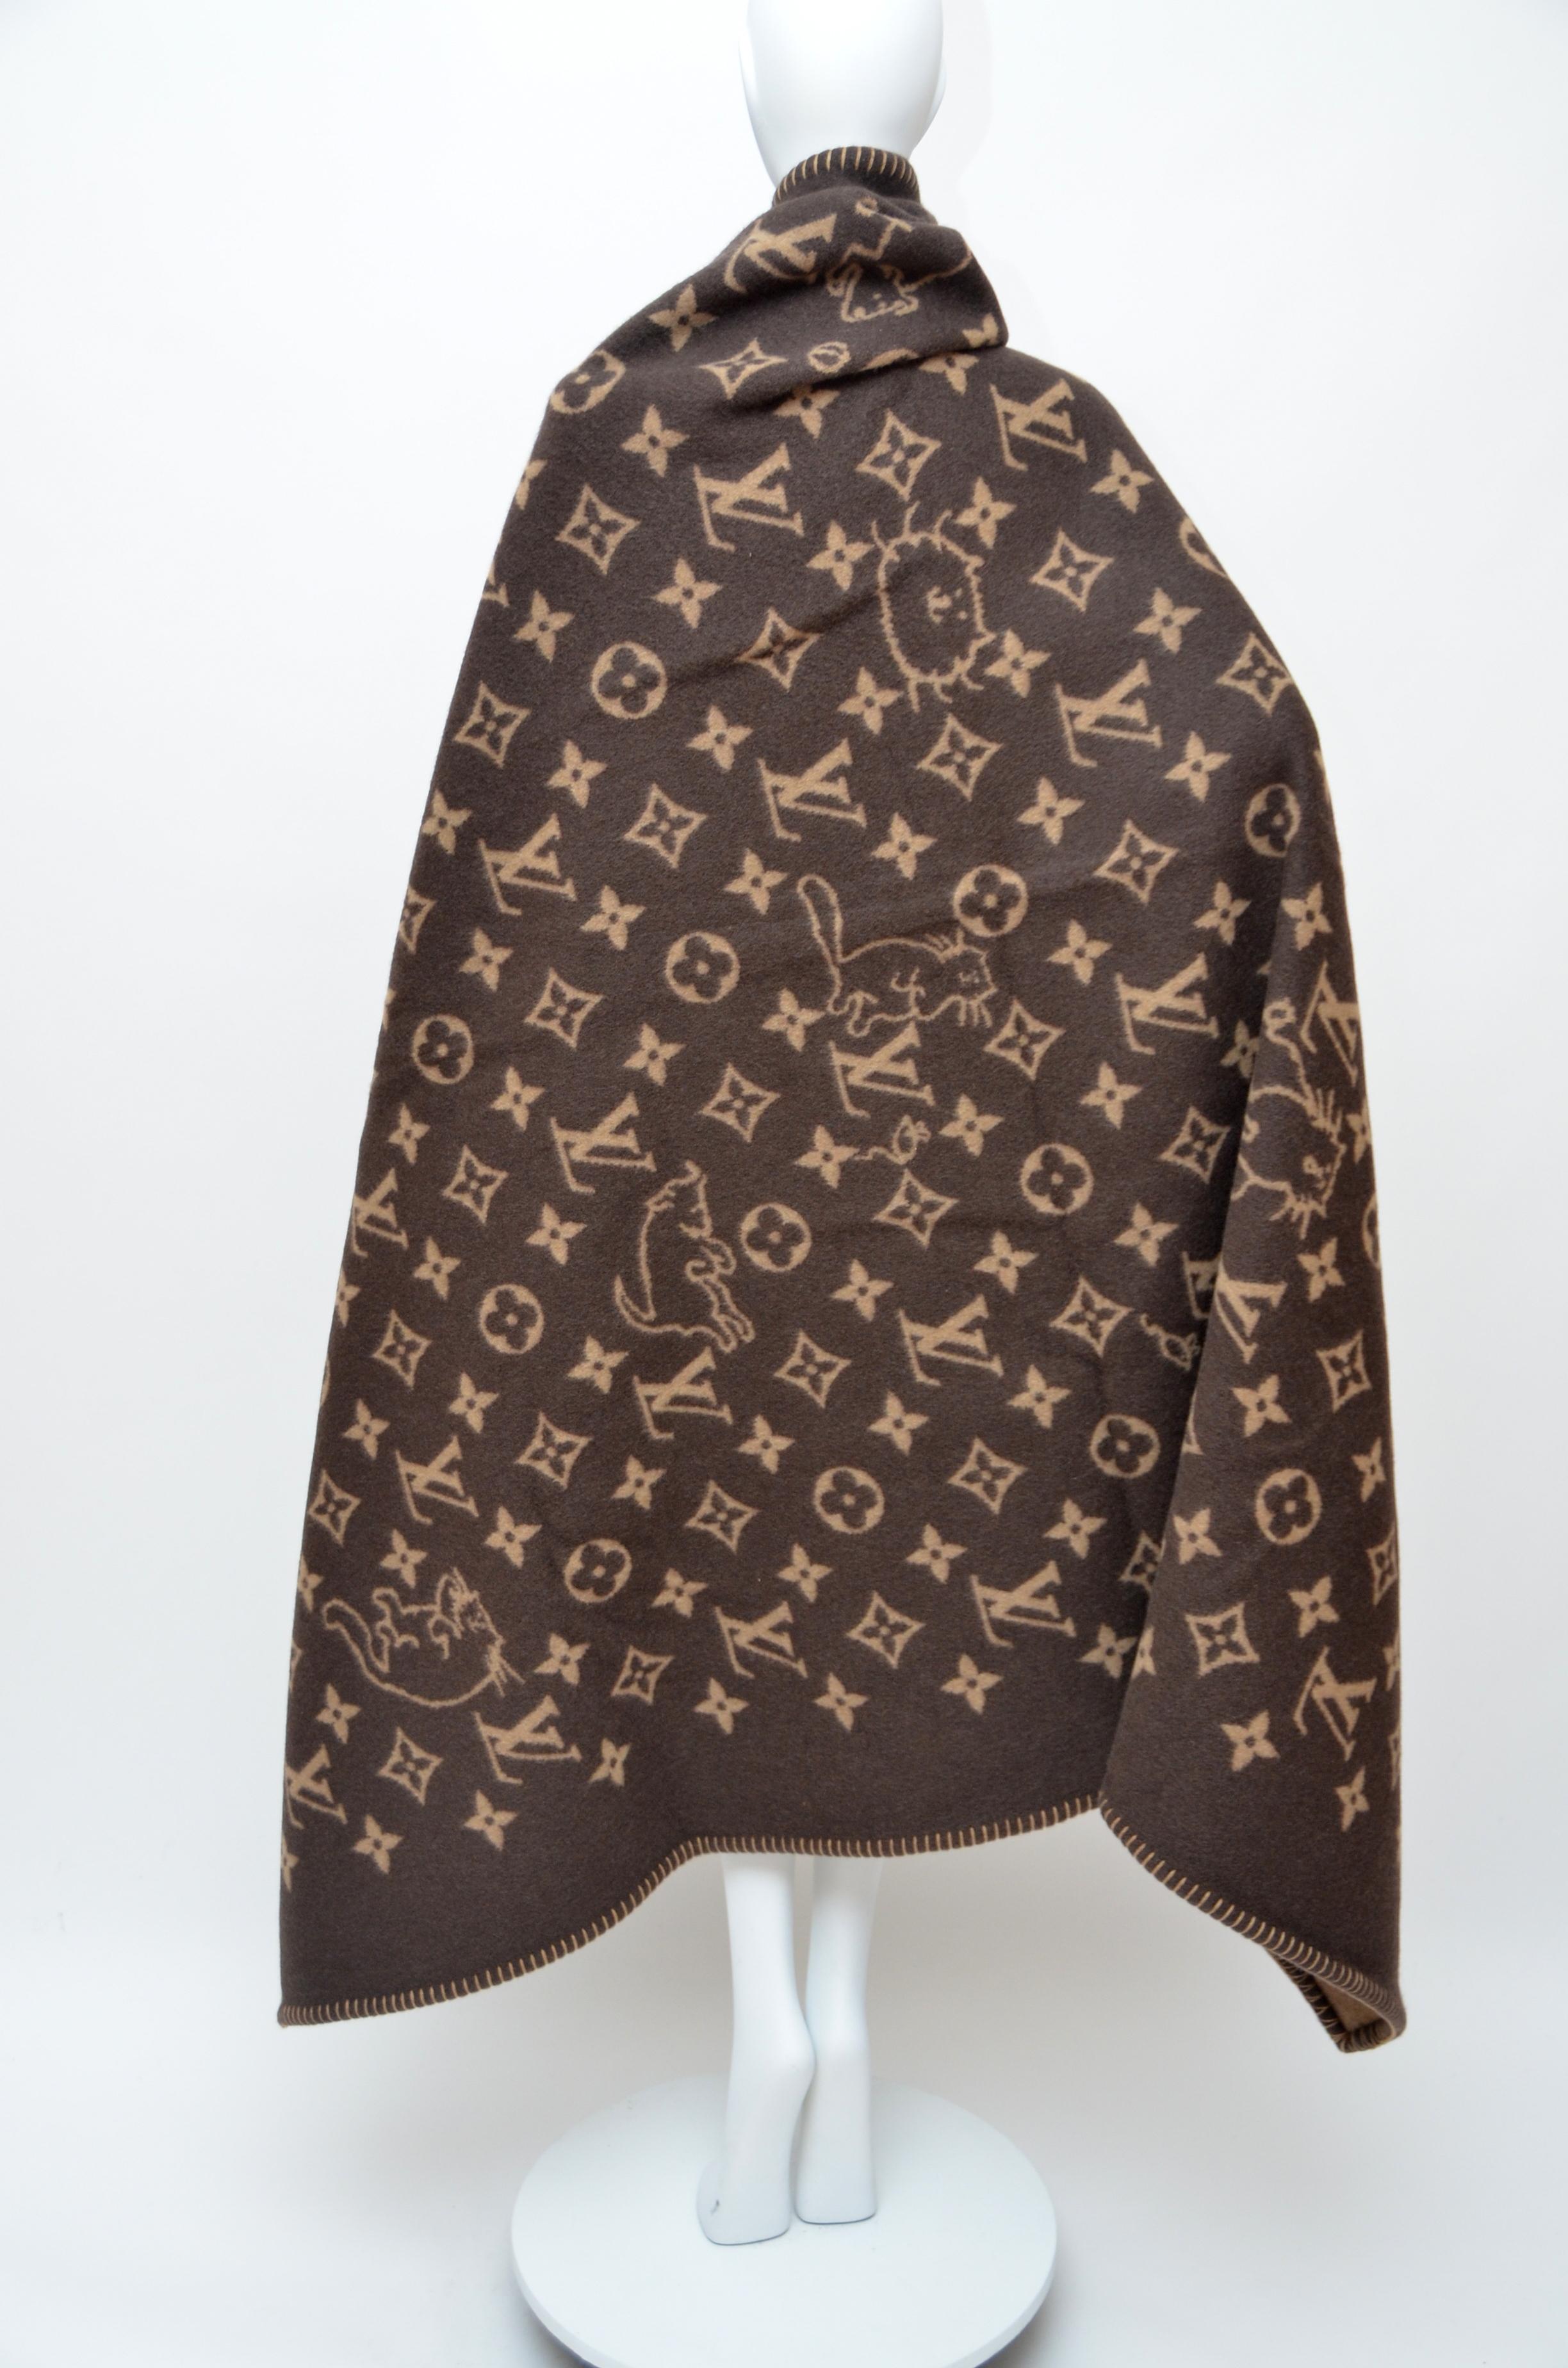 Louis Vuitton X Grace Coddington Catogram Classic Large Blanket NEW